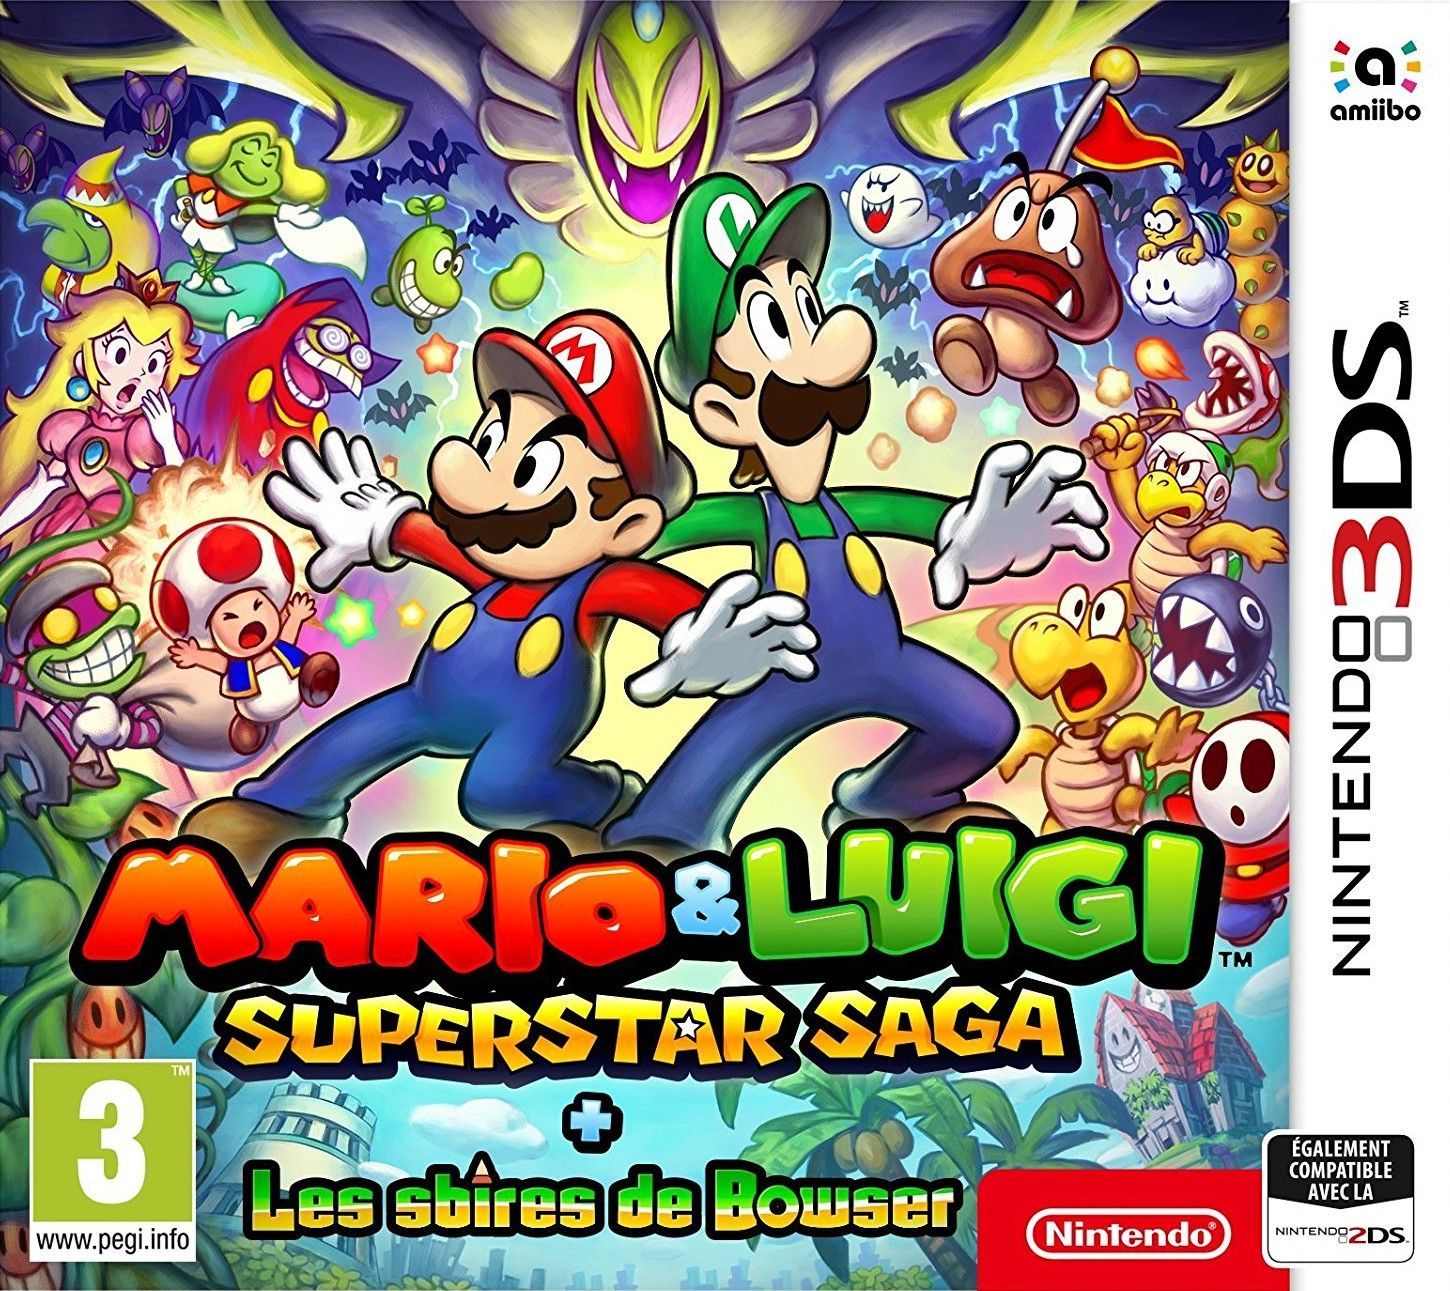 jaquette de Mario & Luigi: Superstar Saga + Les sbires de Bowser sur 3DS